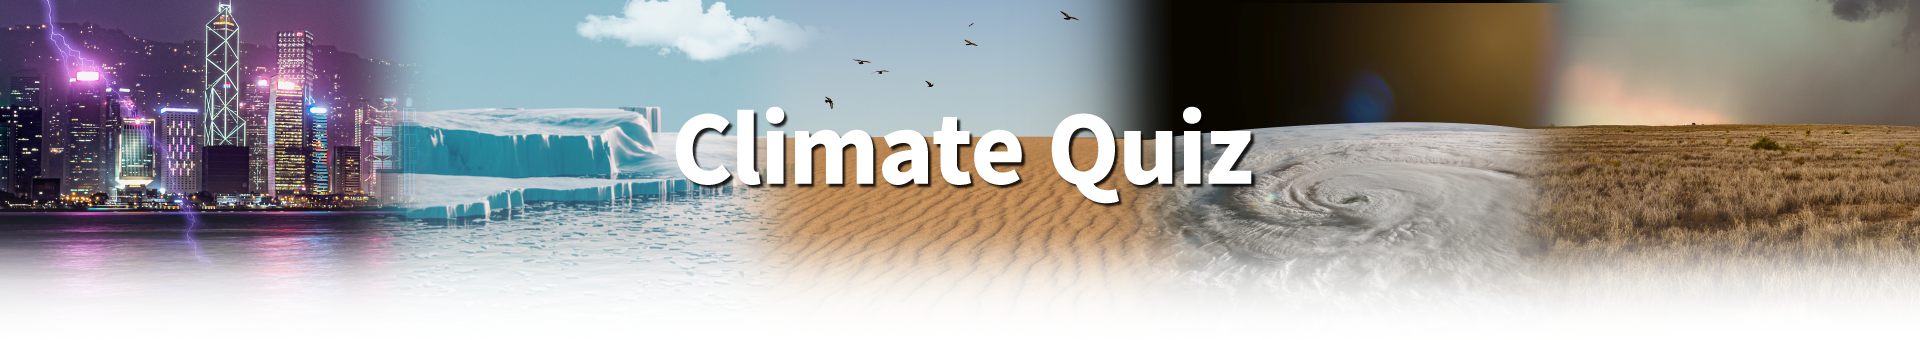 Climate Change Quiz Contest